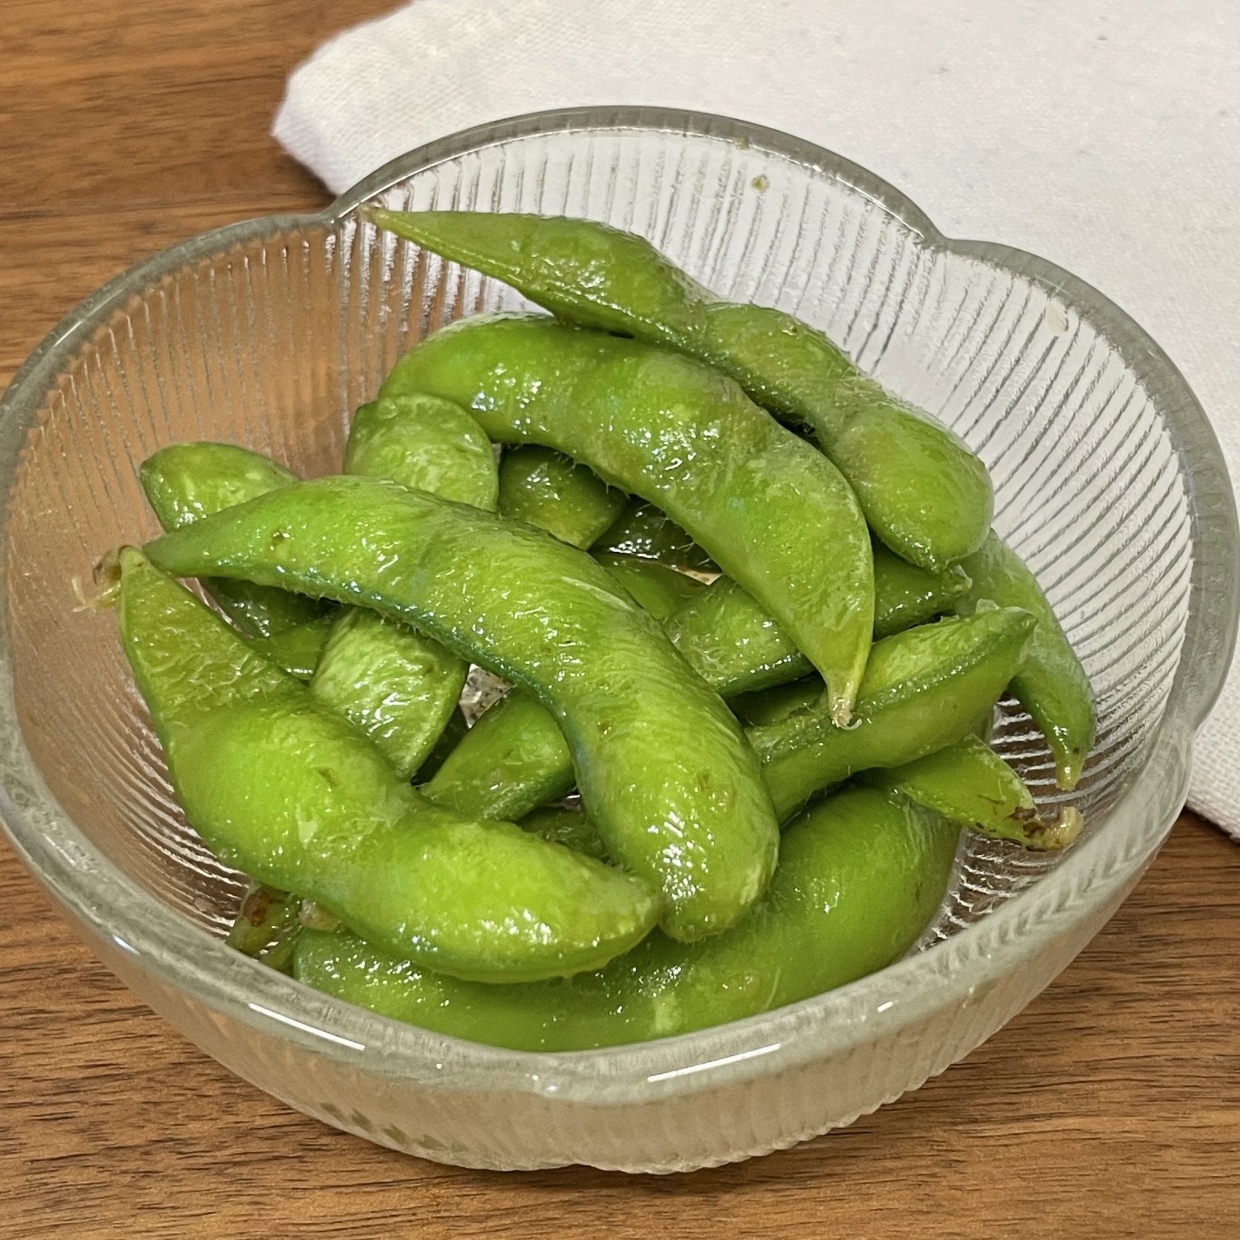  「枝豆」をポリ袋に入れて漬けるだけ。食べるときに冷蔵庫から出すだけレシピ 